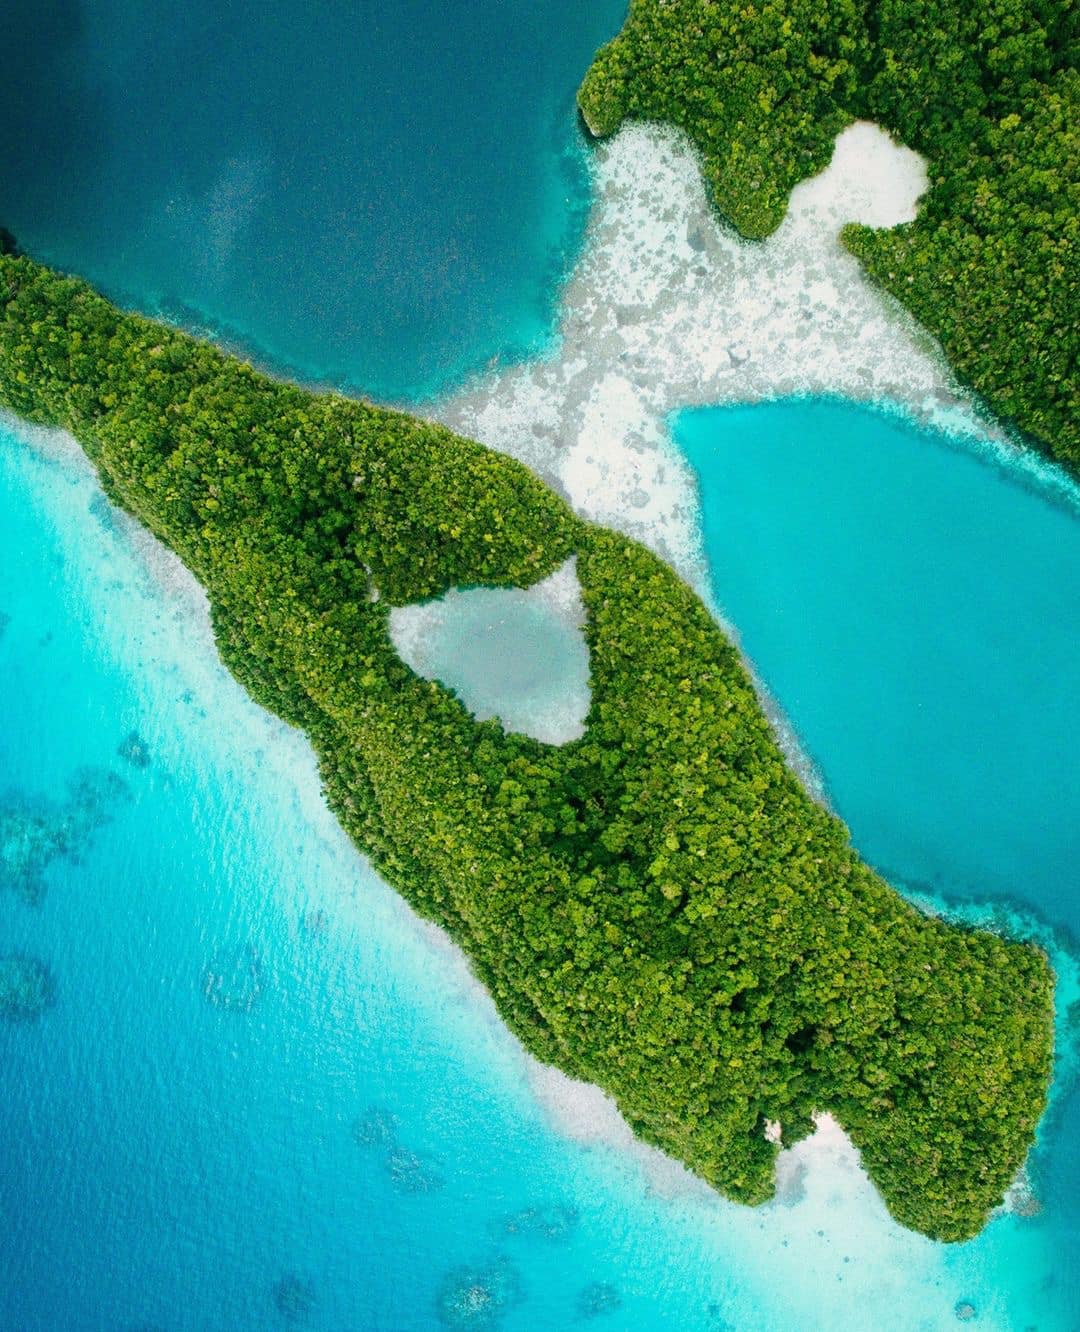 2021年帛琉旅遊,帛琉地標景點,帛琉旅遊,帛琉旅遊泡泡2.0,帛琉旅遊泡泡懶人包